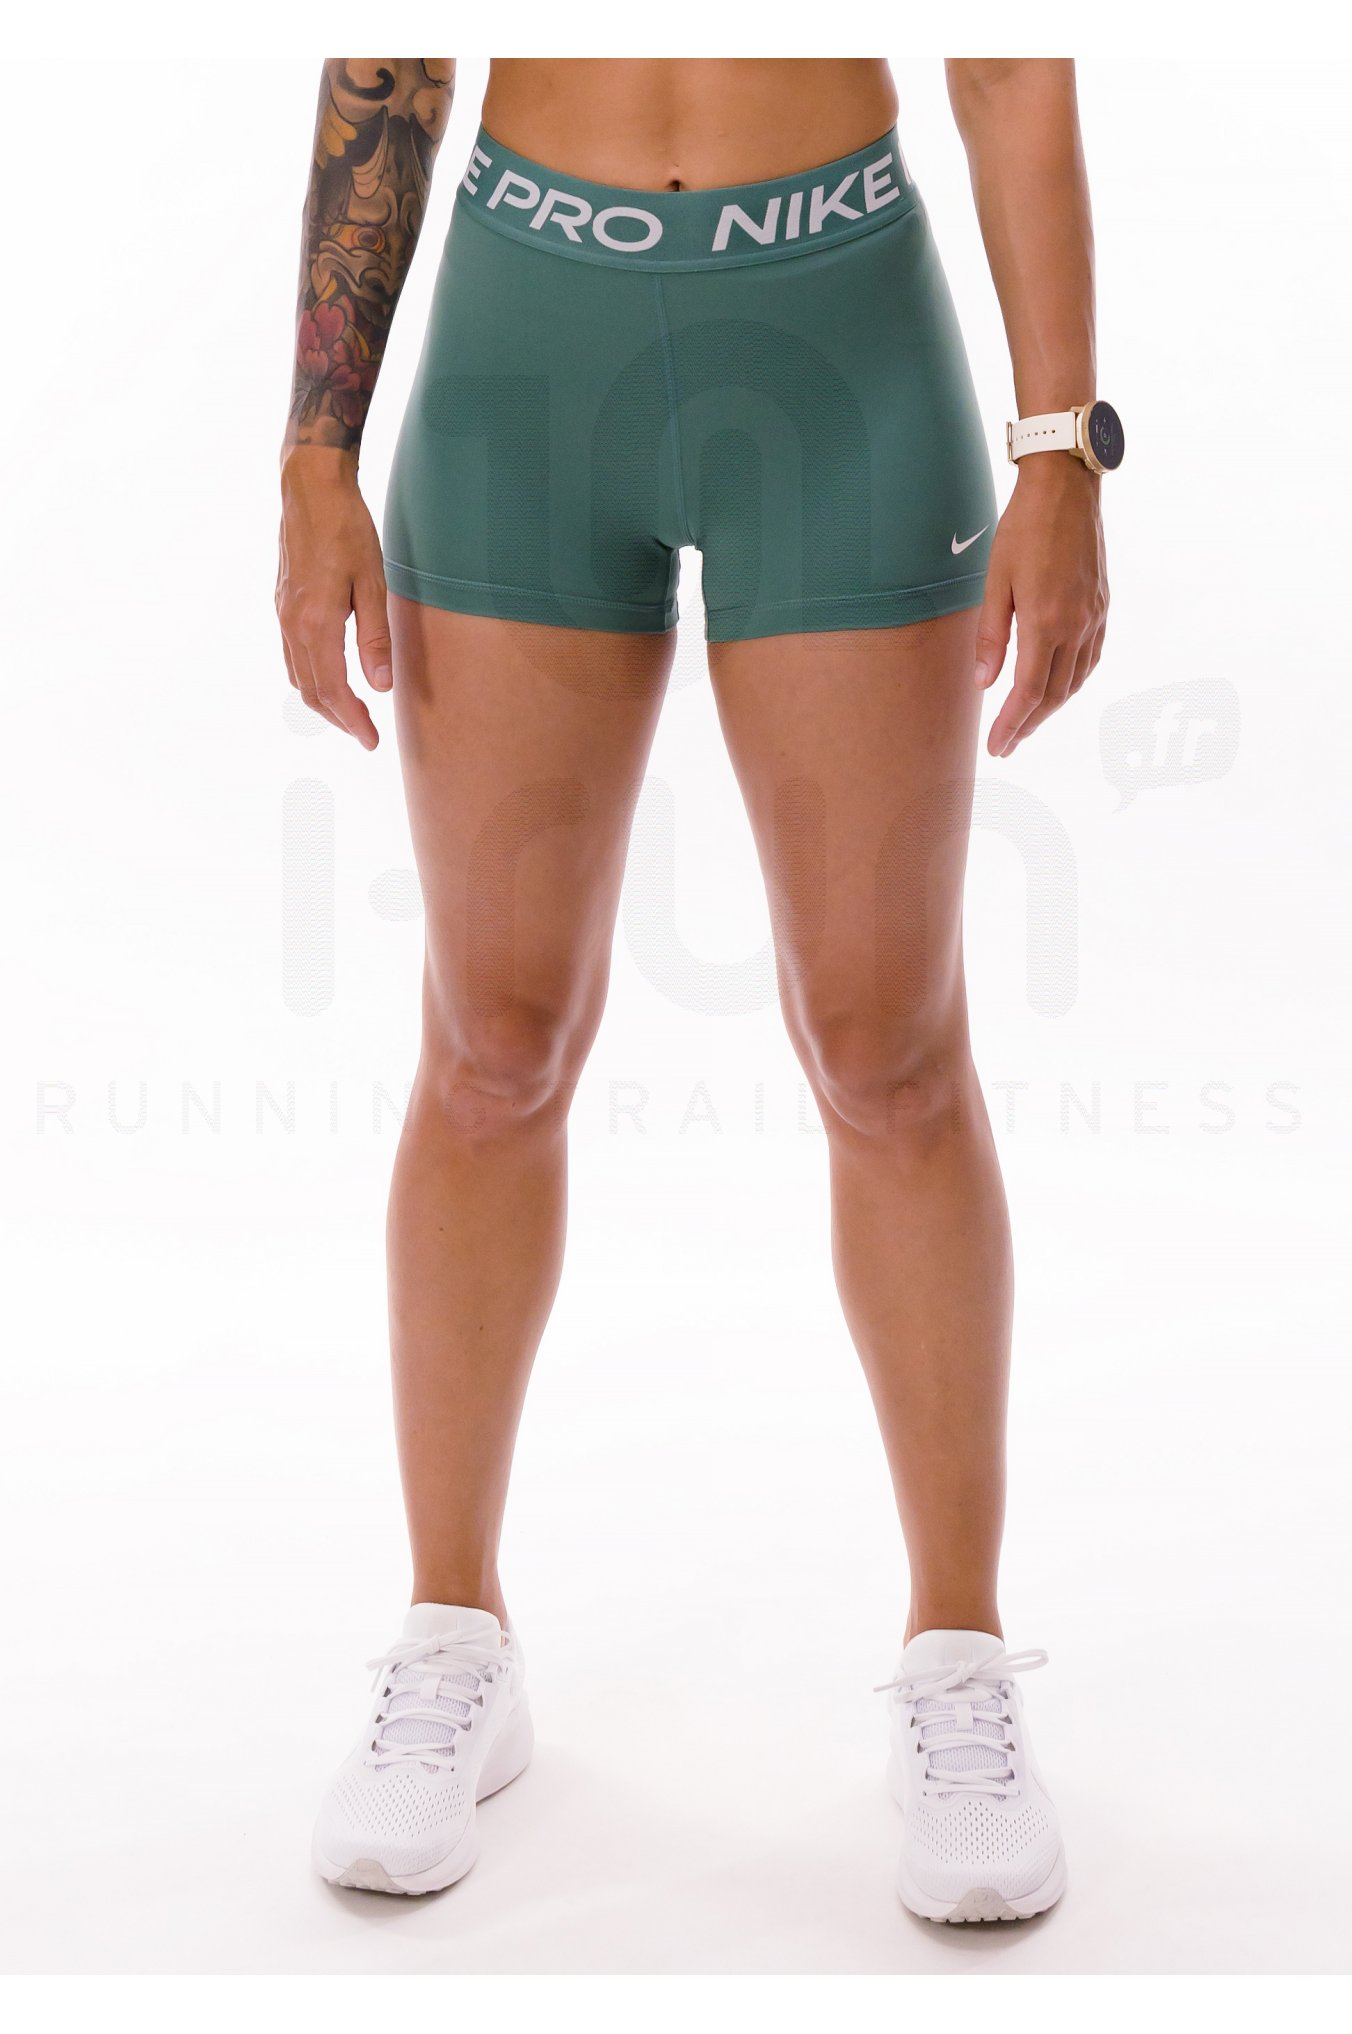 Nike pantaln corto Pro 365